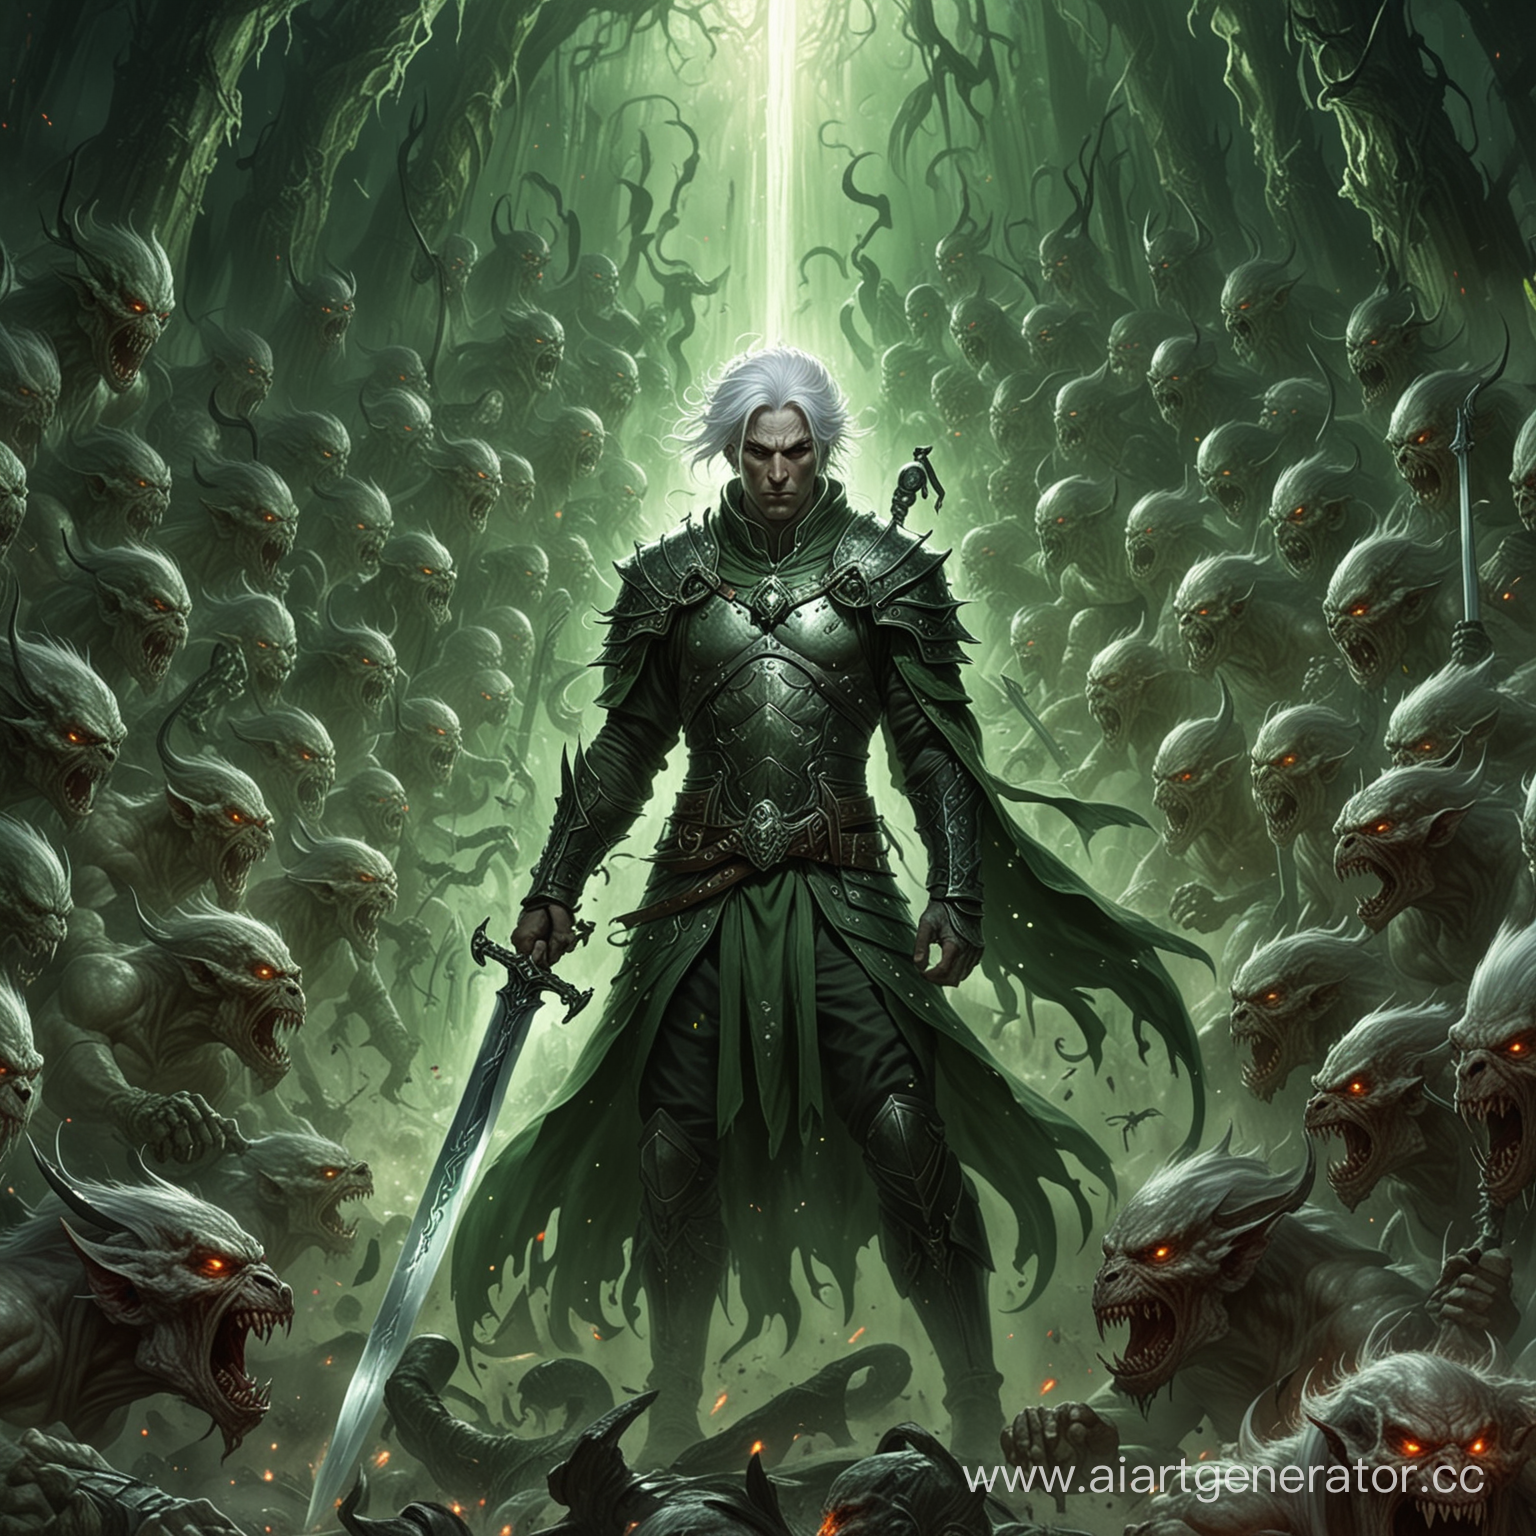 Армия демонов врывается в ад через зелёный портал. Во главе армии демонов стоит мужчина, у которого белые волосы, длинный меч в правой руке.